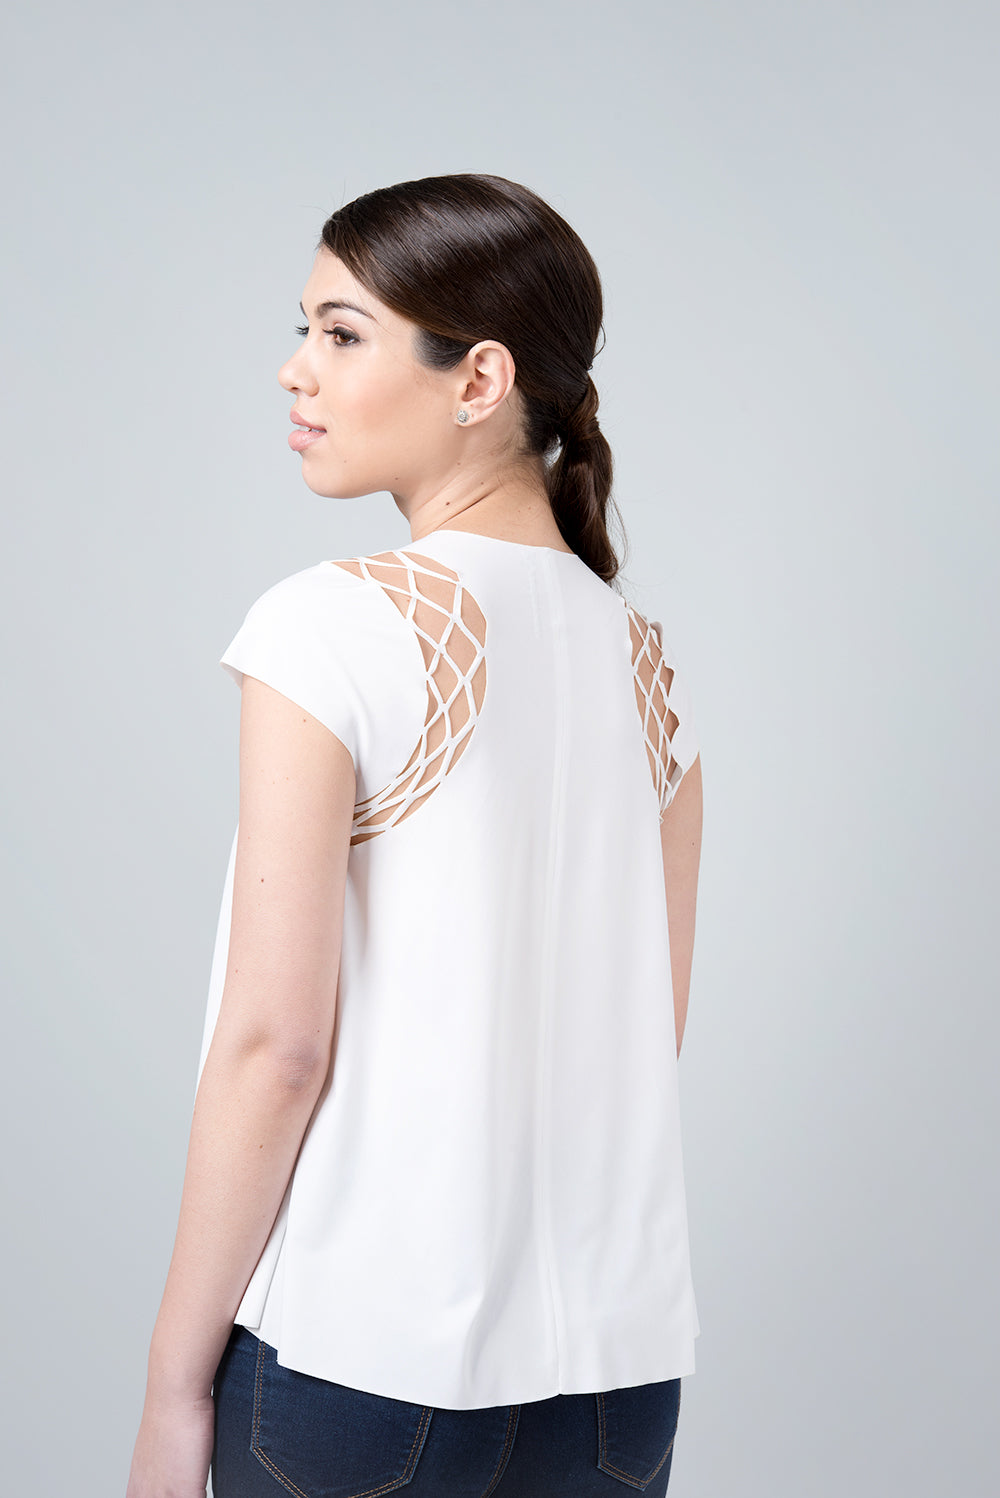 חולצת גמא - חולצה לבנה עם חיתוך מיוחד בכתף